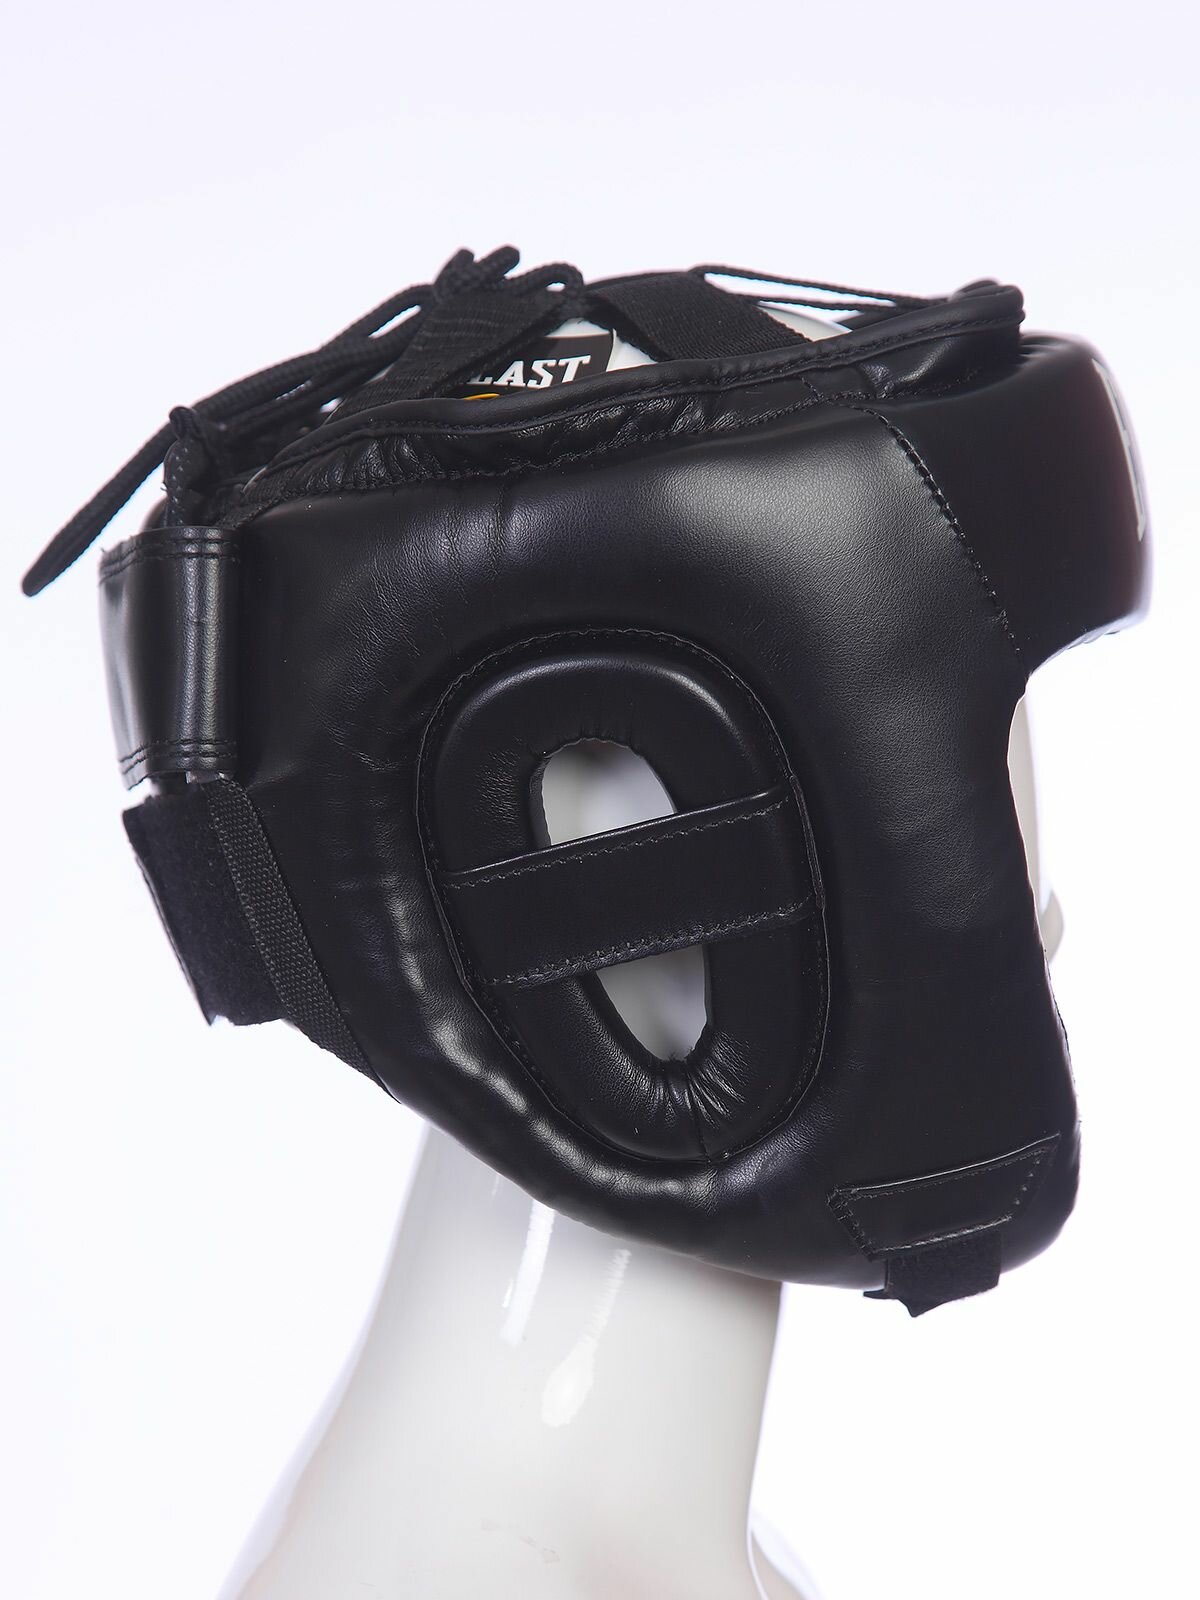 Боксерский шлем Everlast, шлем для бокса тренировочный, черный-L